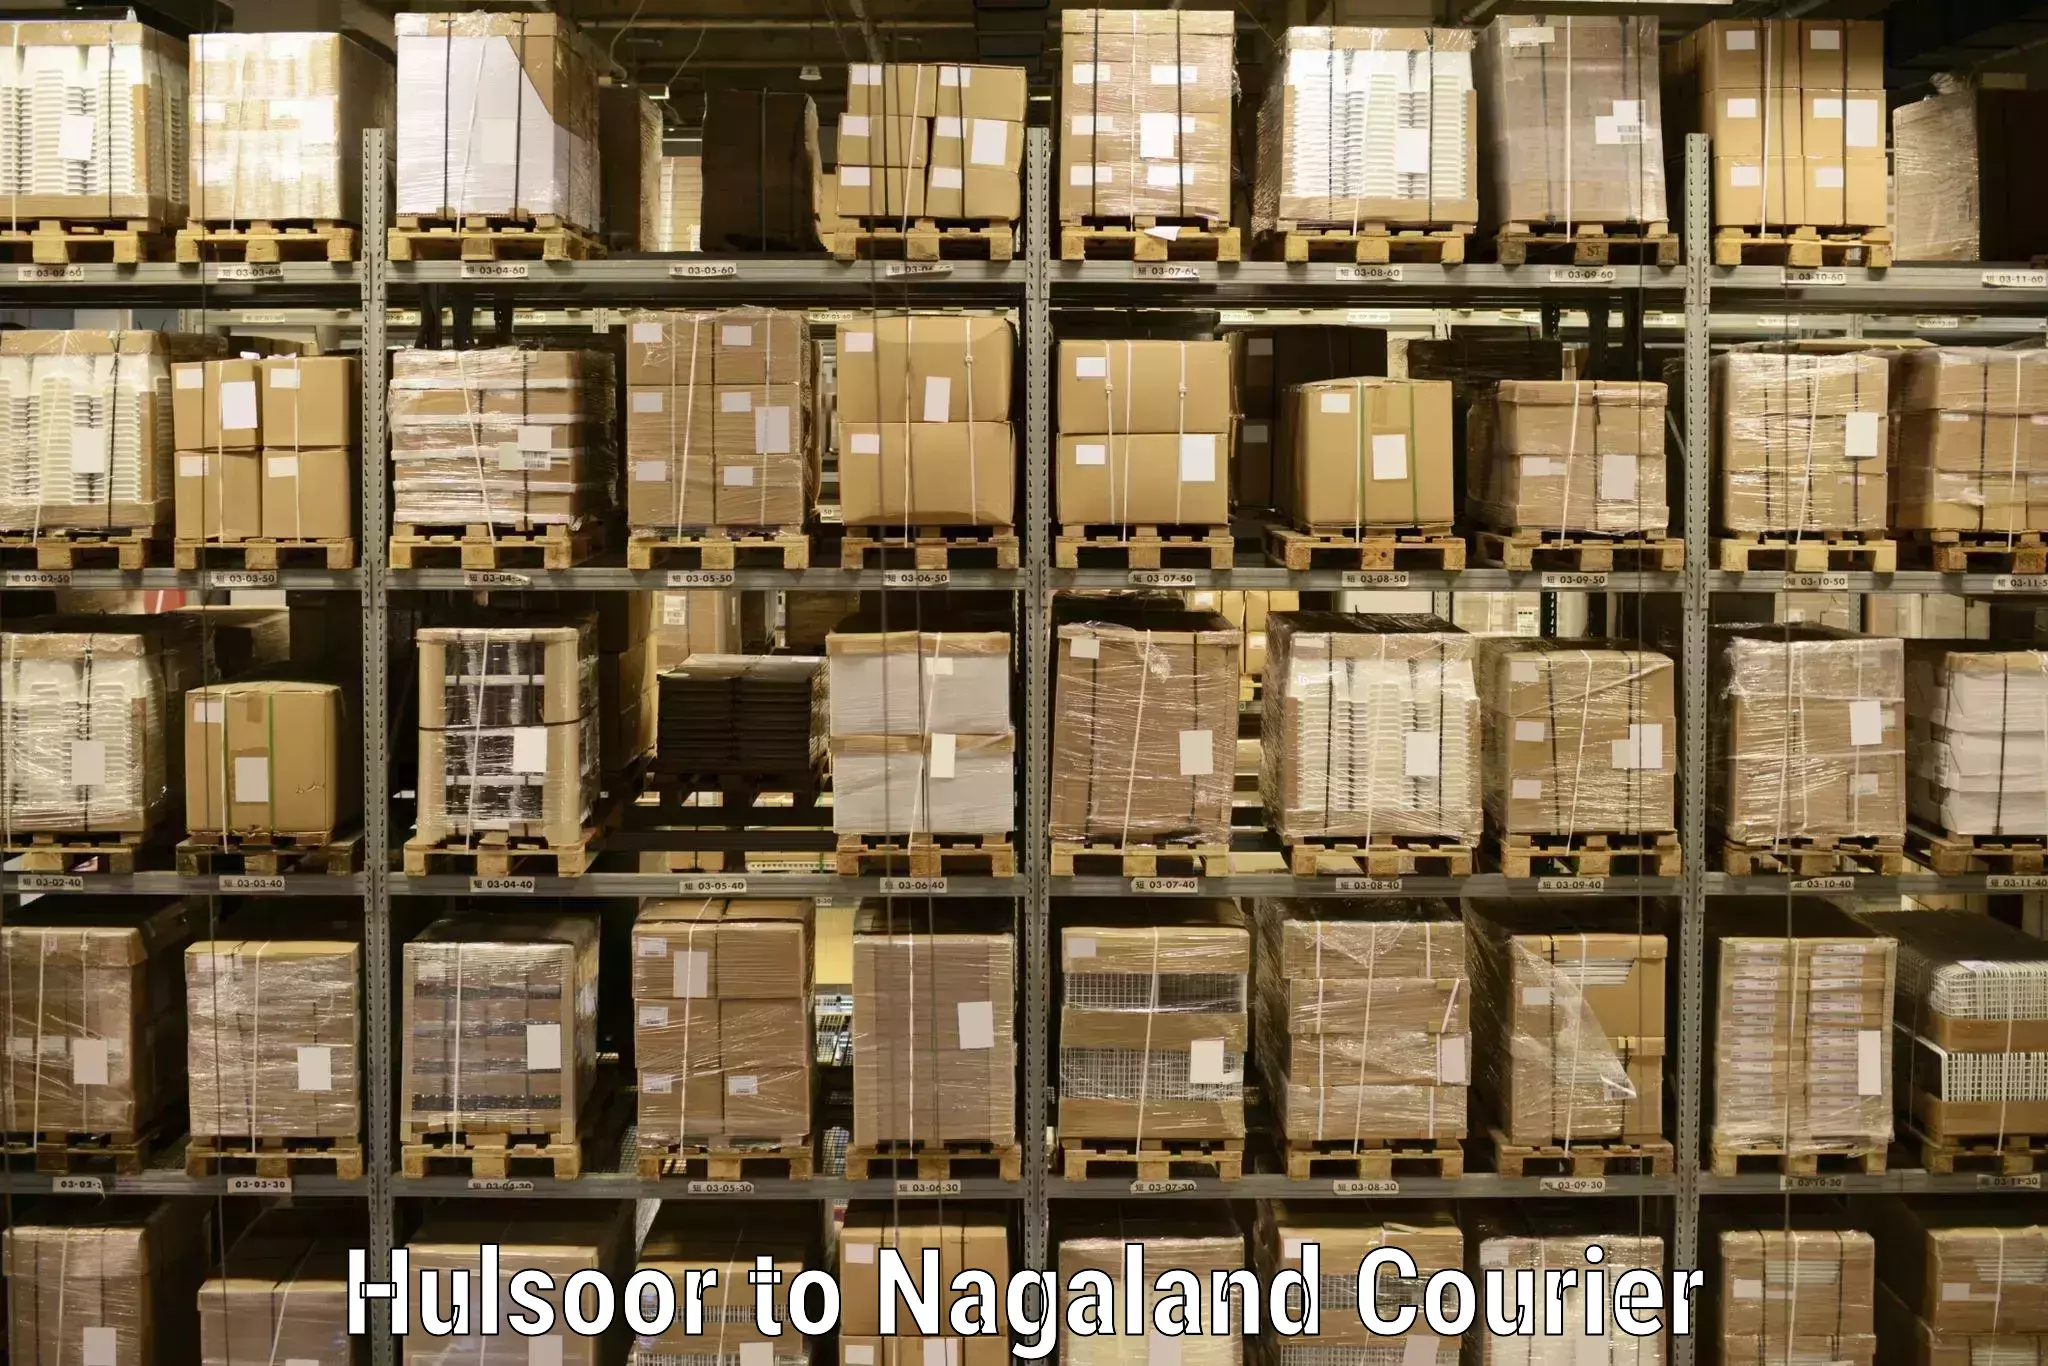 Courier app Hulsoor to NIT Nagaland